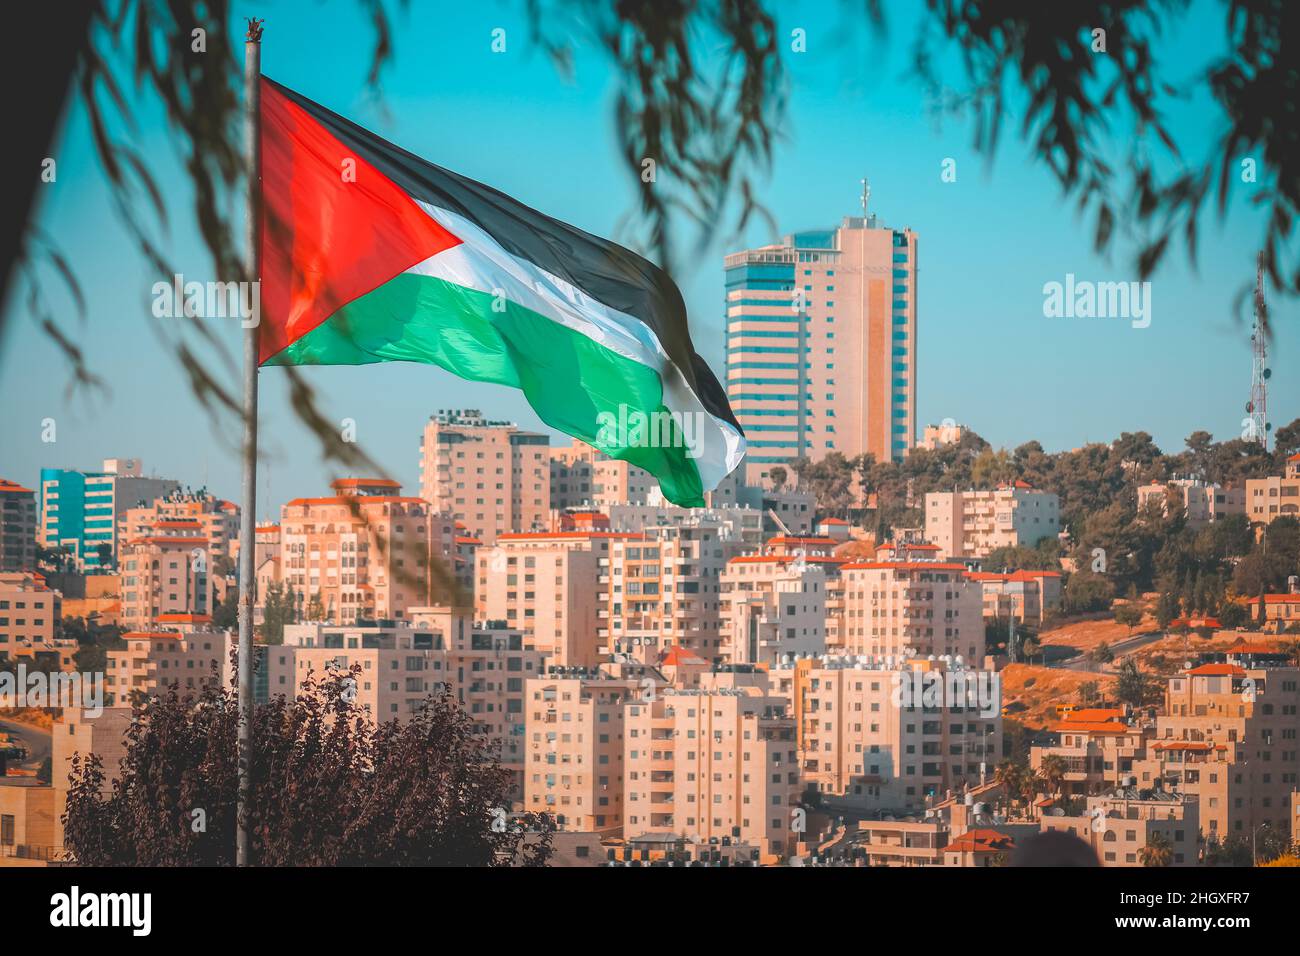 Drapeau palestinien comme à travers les feuilles de l'arbre avec quelques bâtiments de la ville sur le fond à ramallah Banque D'Images